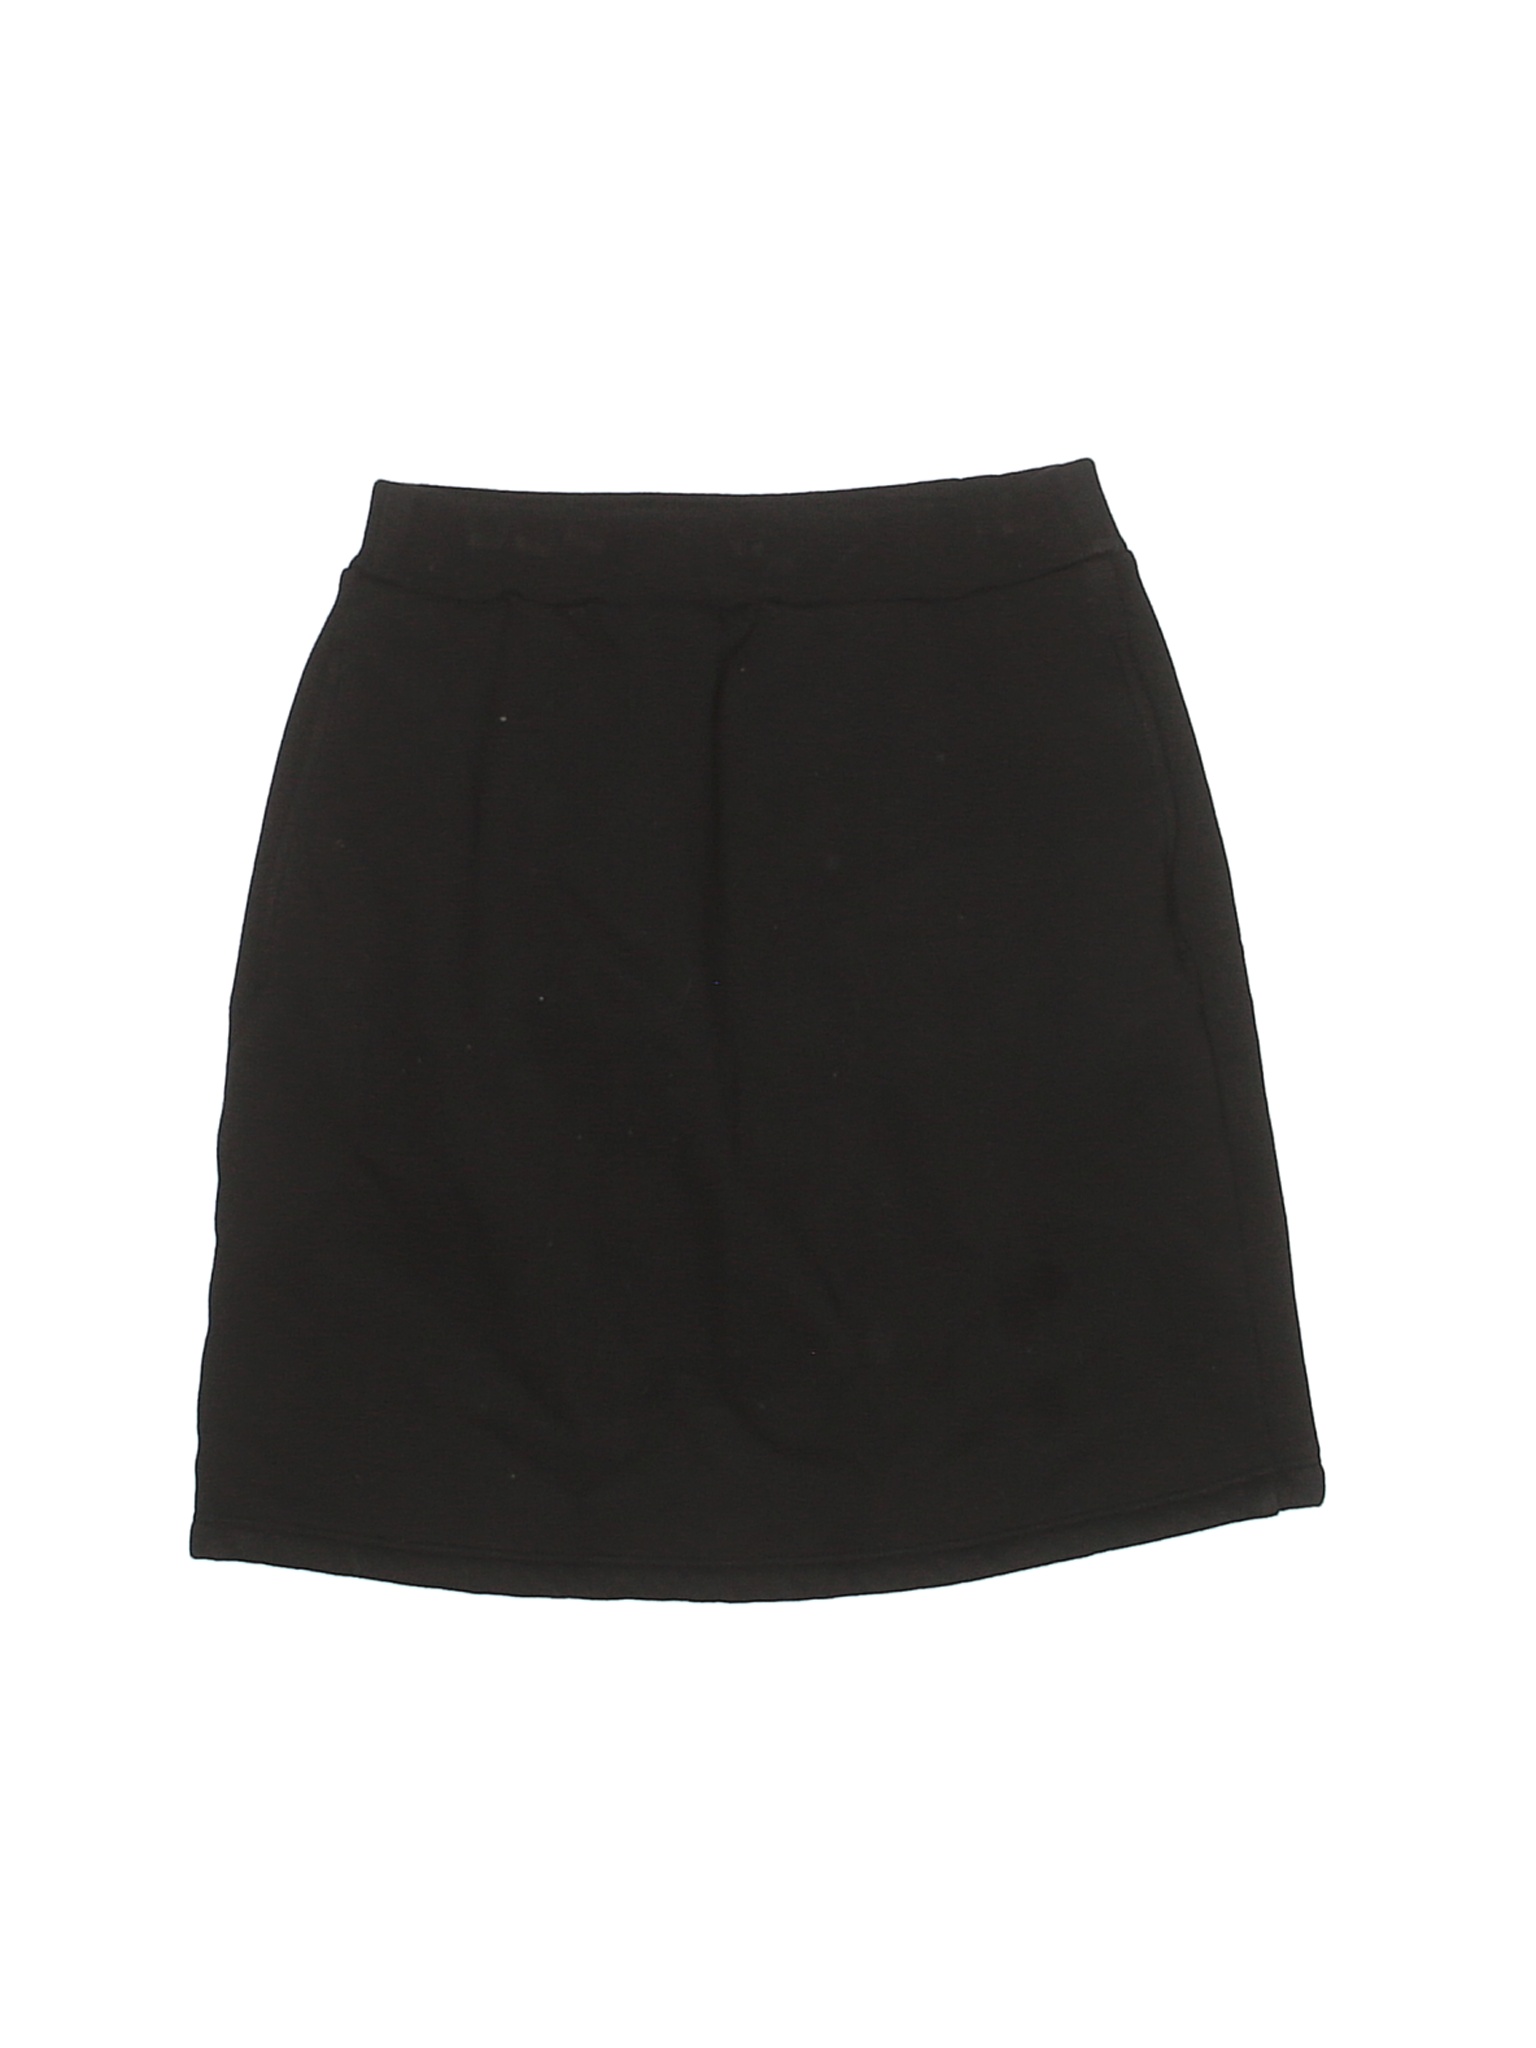 Uniqlo Girls Black Skirt 9 | eBay